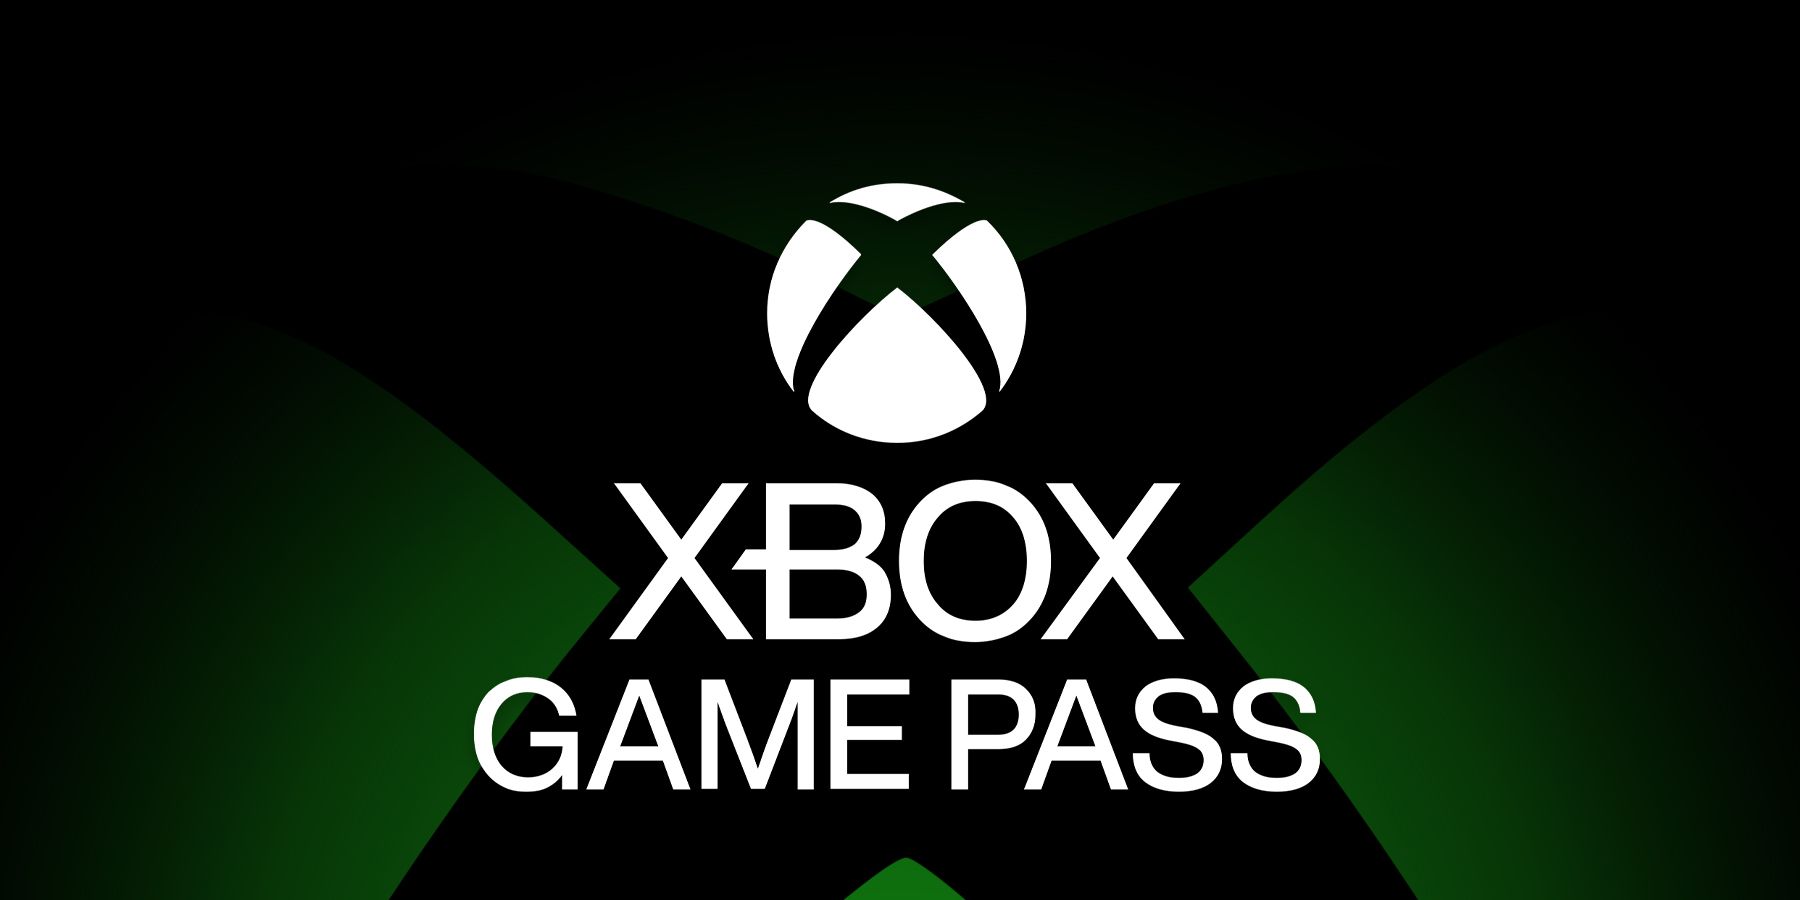 xbox game pass on logo